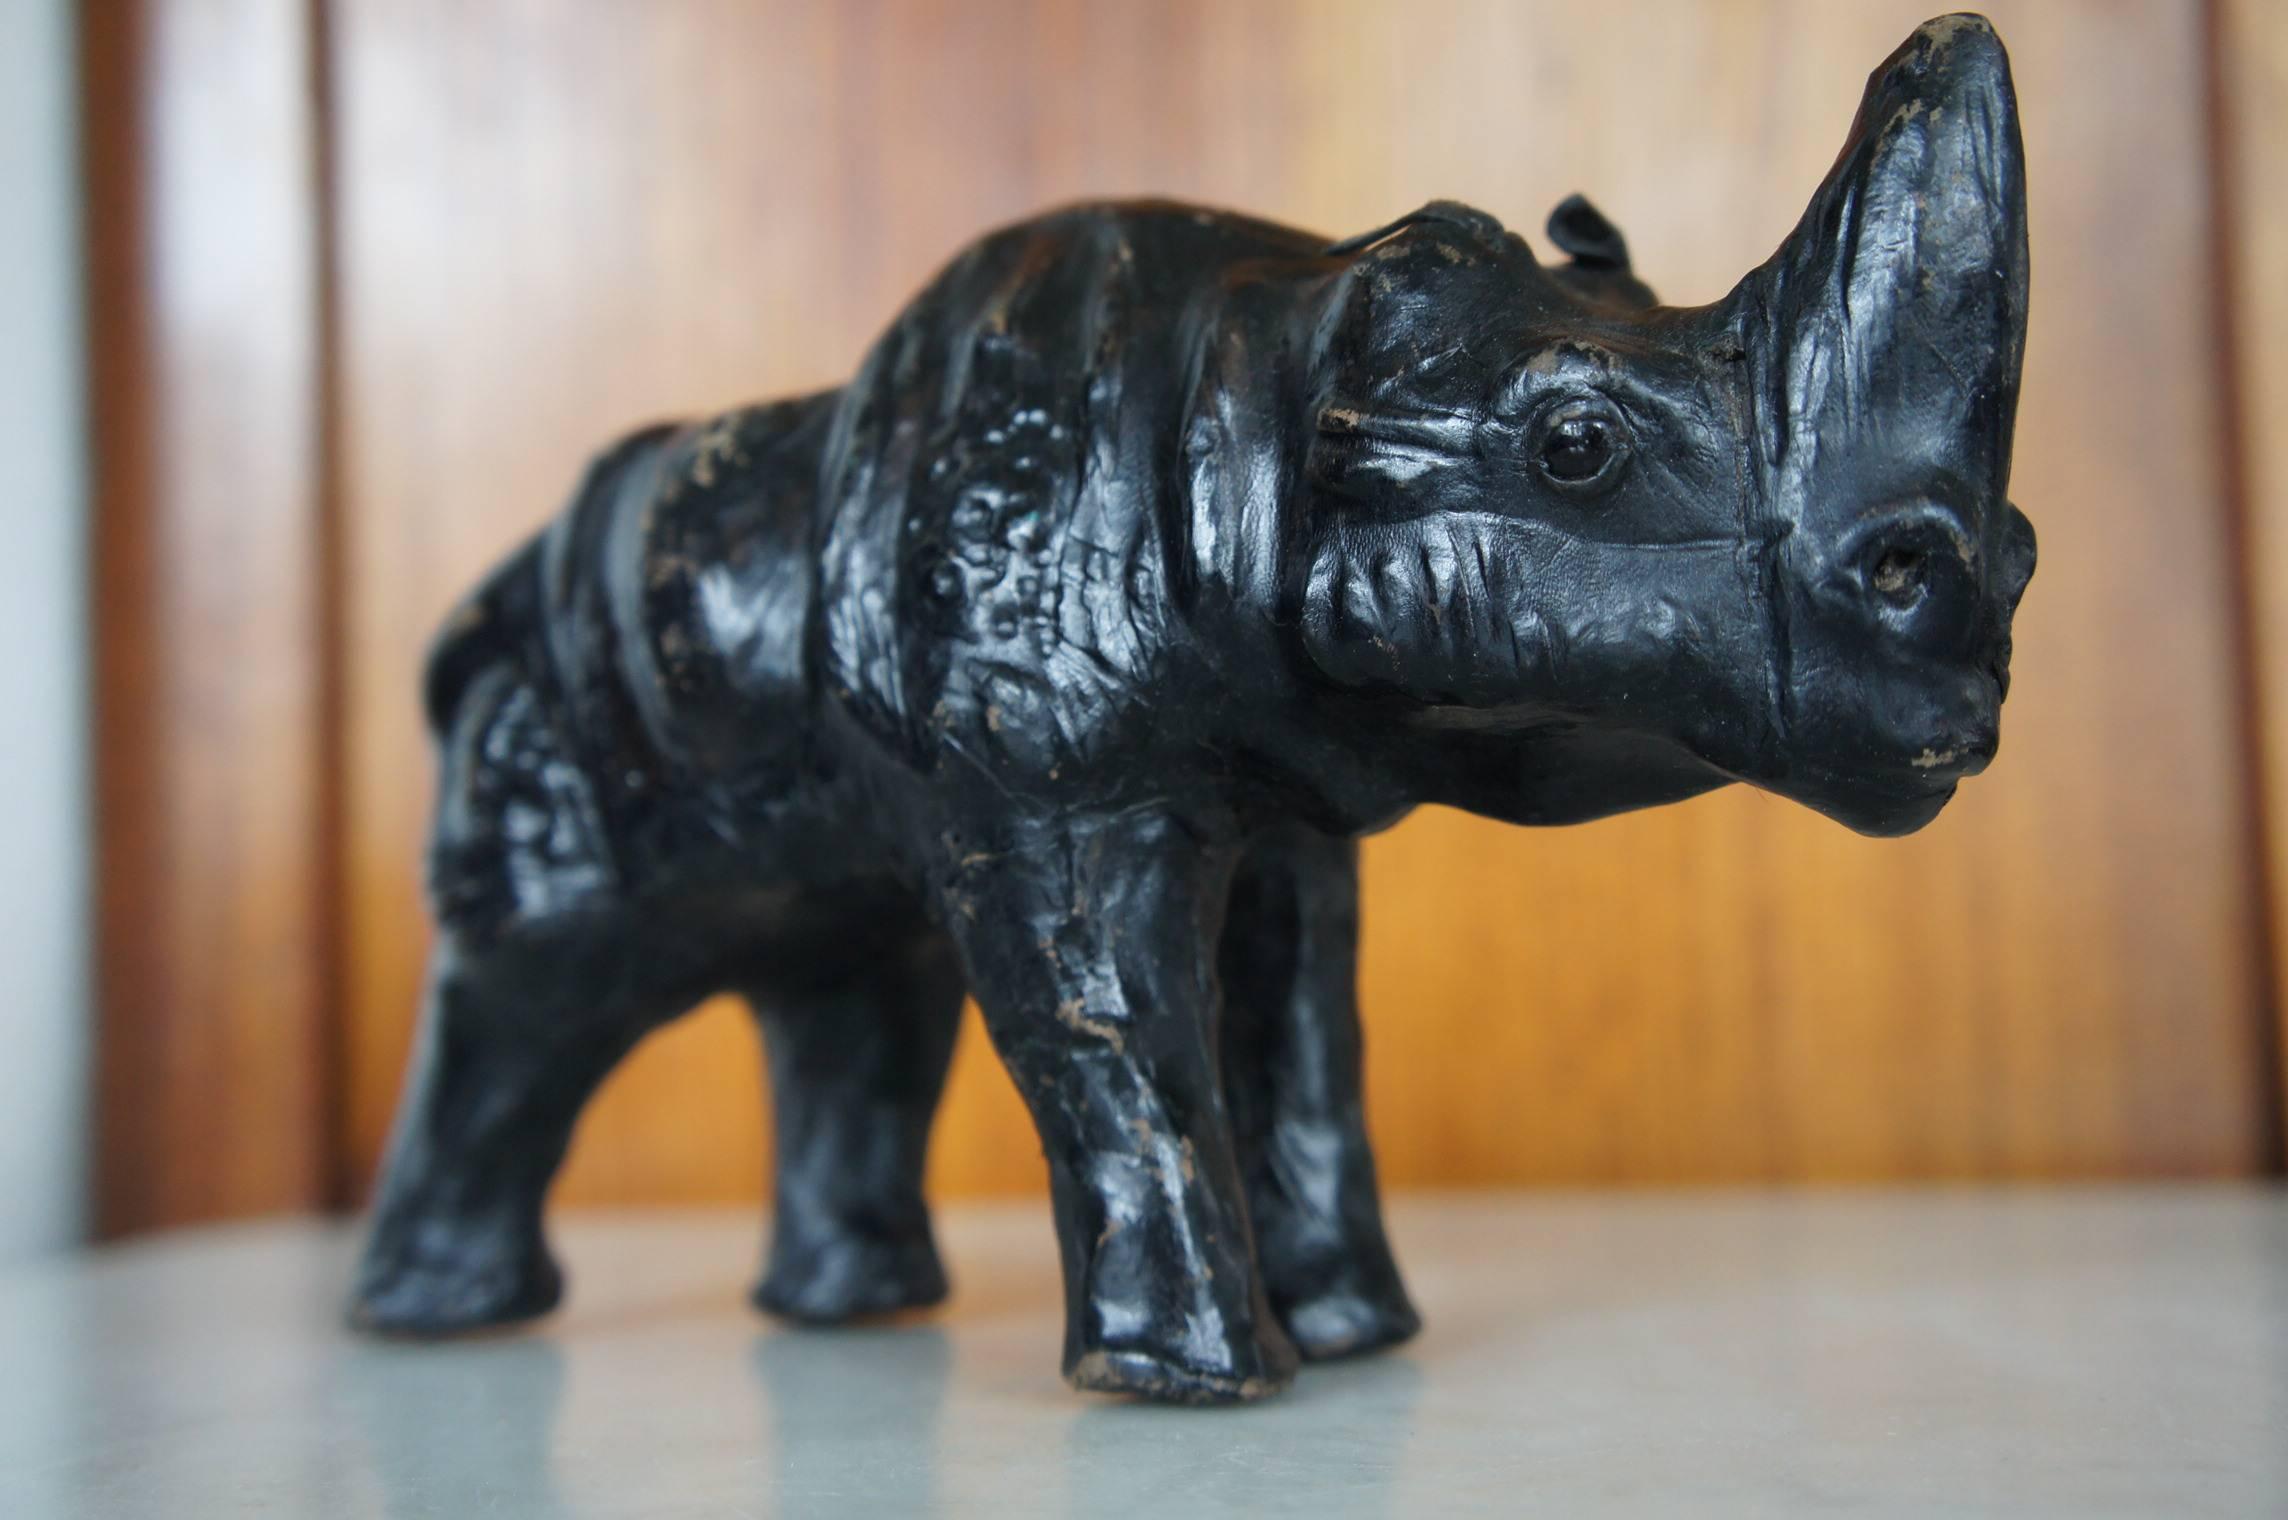 Paar handgefertigte Spitzmaulnashörner aus der Mitte des Jahrhunderts.

Diese hölzernen Nashornskulpturen aus dem 20. Jahrhundert mit schwarzer Lederhaut sind ein seltenes Paar. Sie sind klein und haben beide schöne, dunkle Glasaugen. Diese